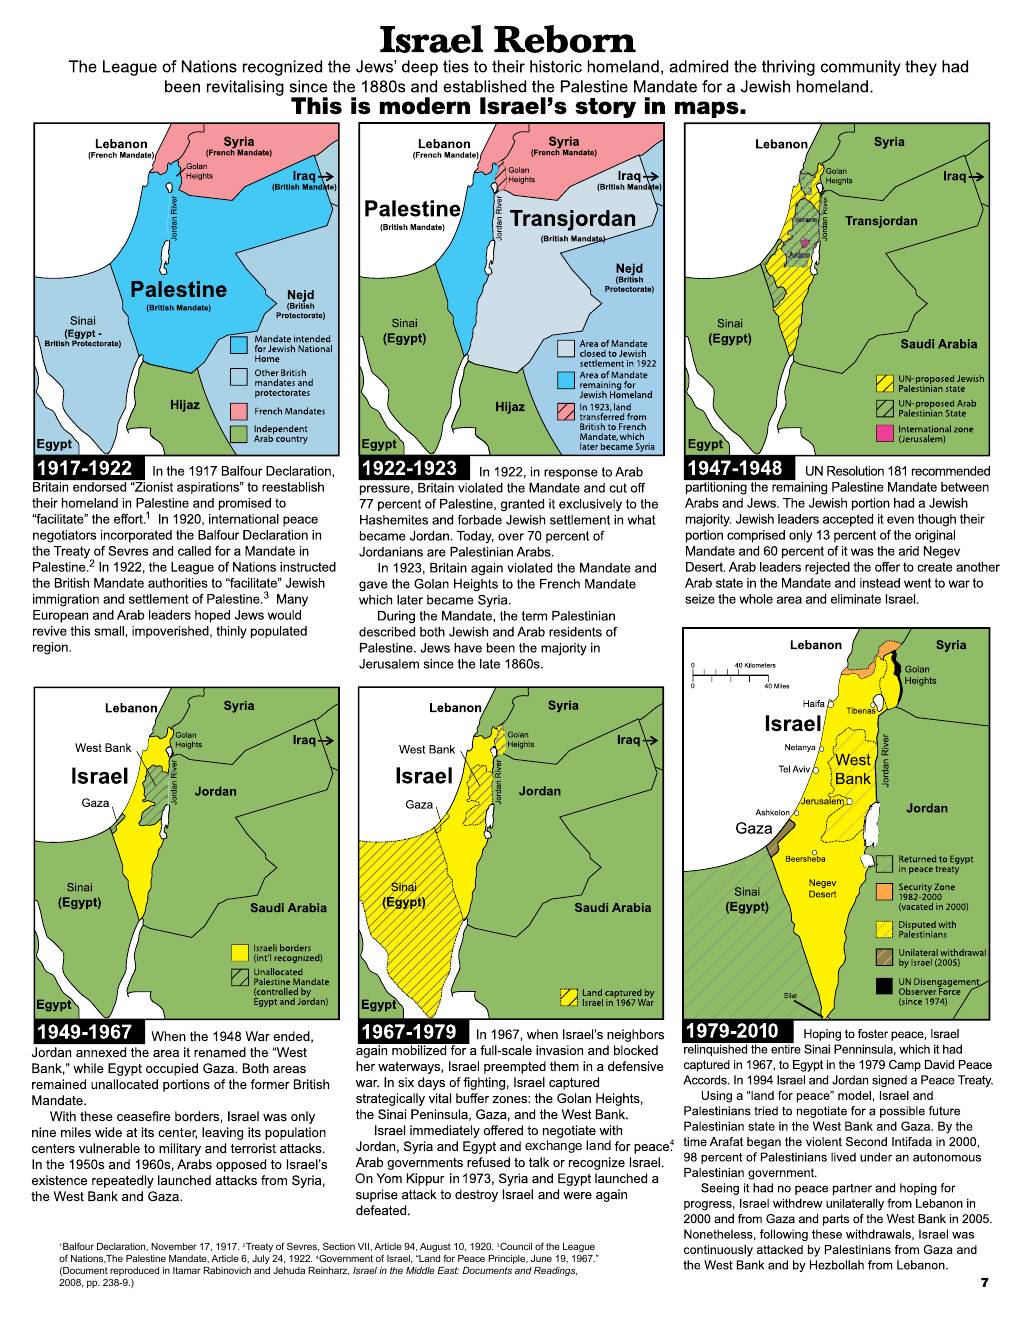 Η πραγματική ιστορία του Ισραήλ σε 6 χάρτες, 1917-2010: This is modern Israel's story in 6 maps 1917-2010